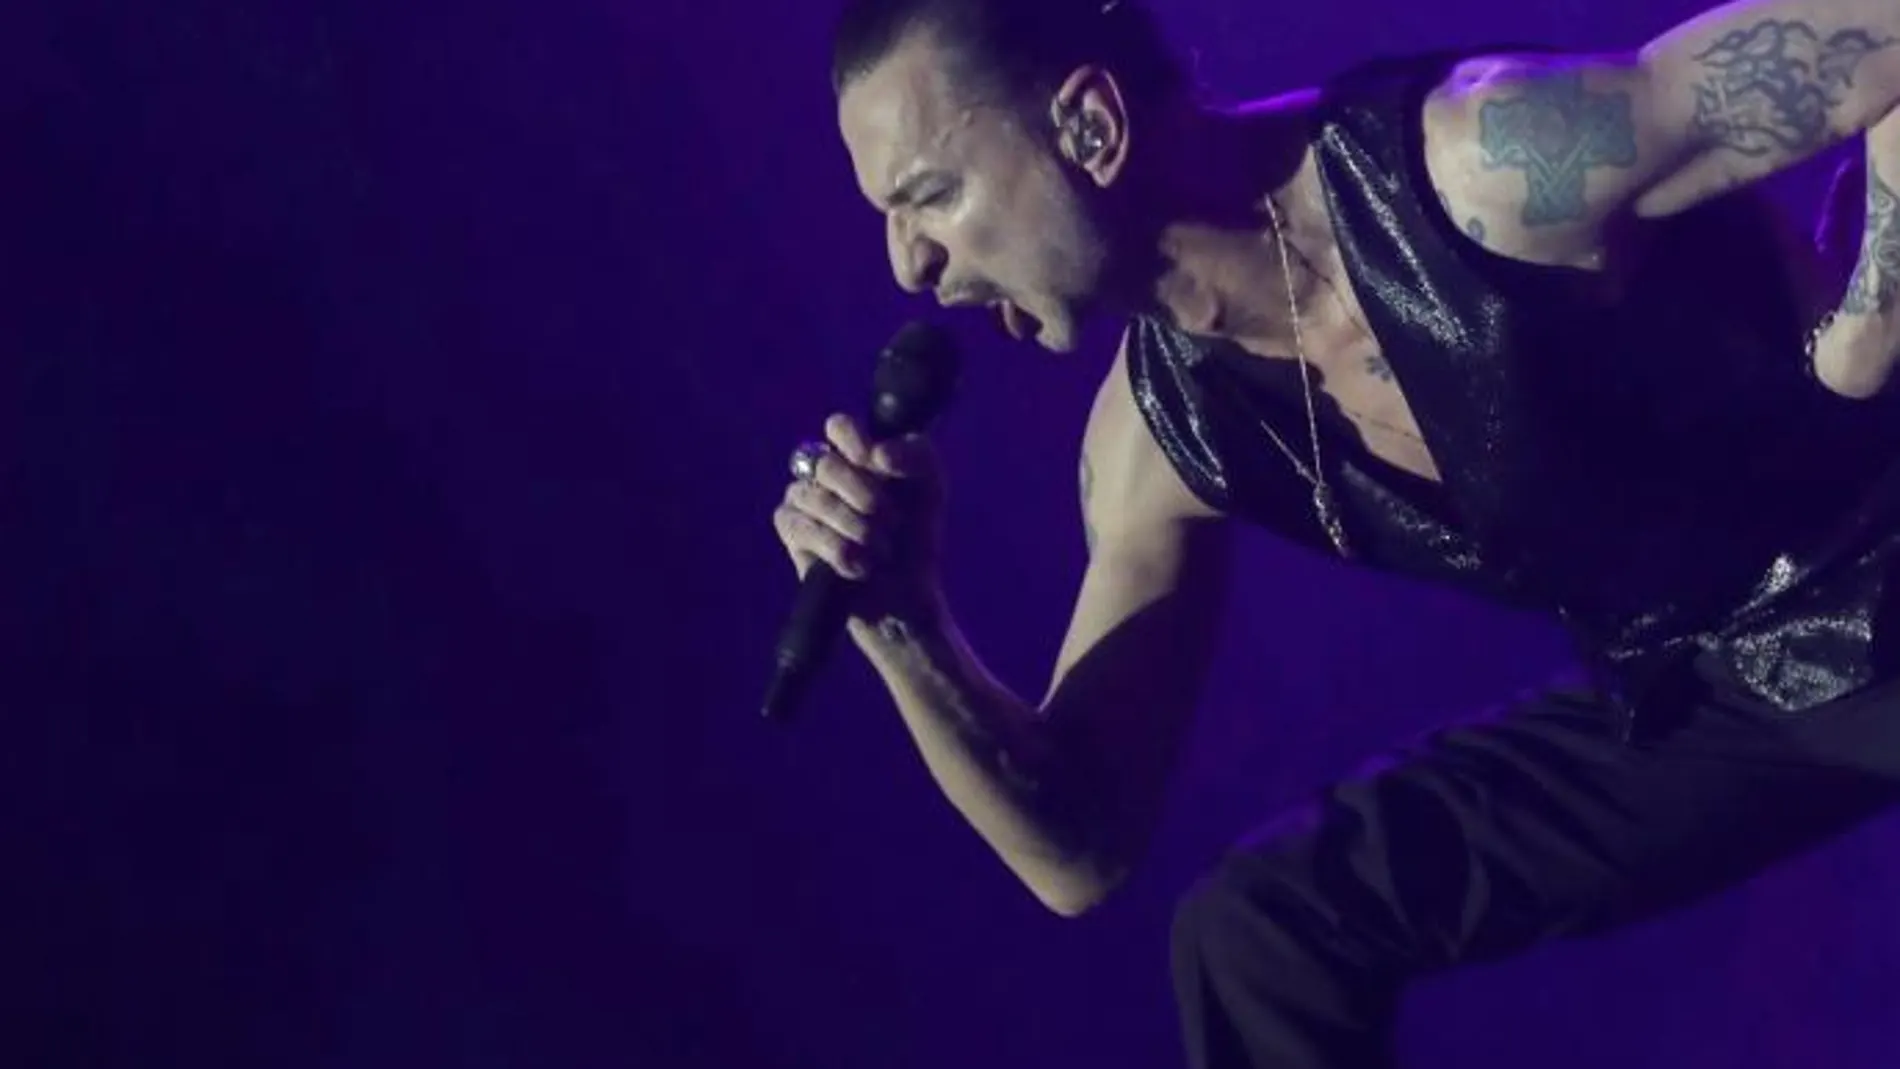 Concierto de la banda británica Depeche Mode esta noche en el WiZink Center de Madrid